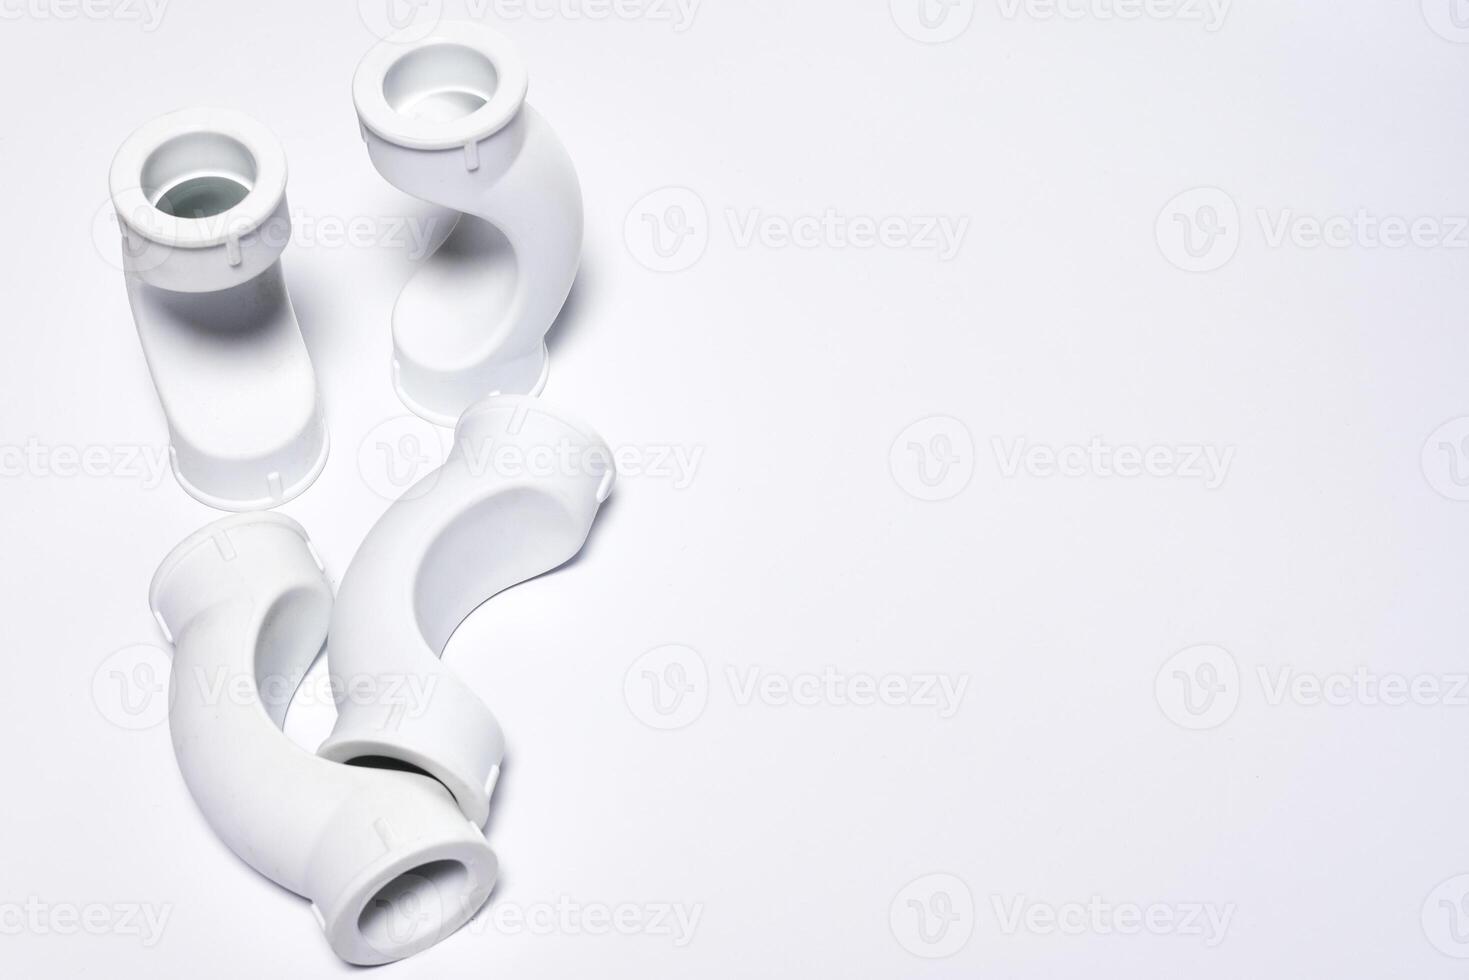 Plastik Rohr Stücke auf ein Weiß Oberfläche foto